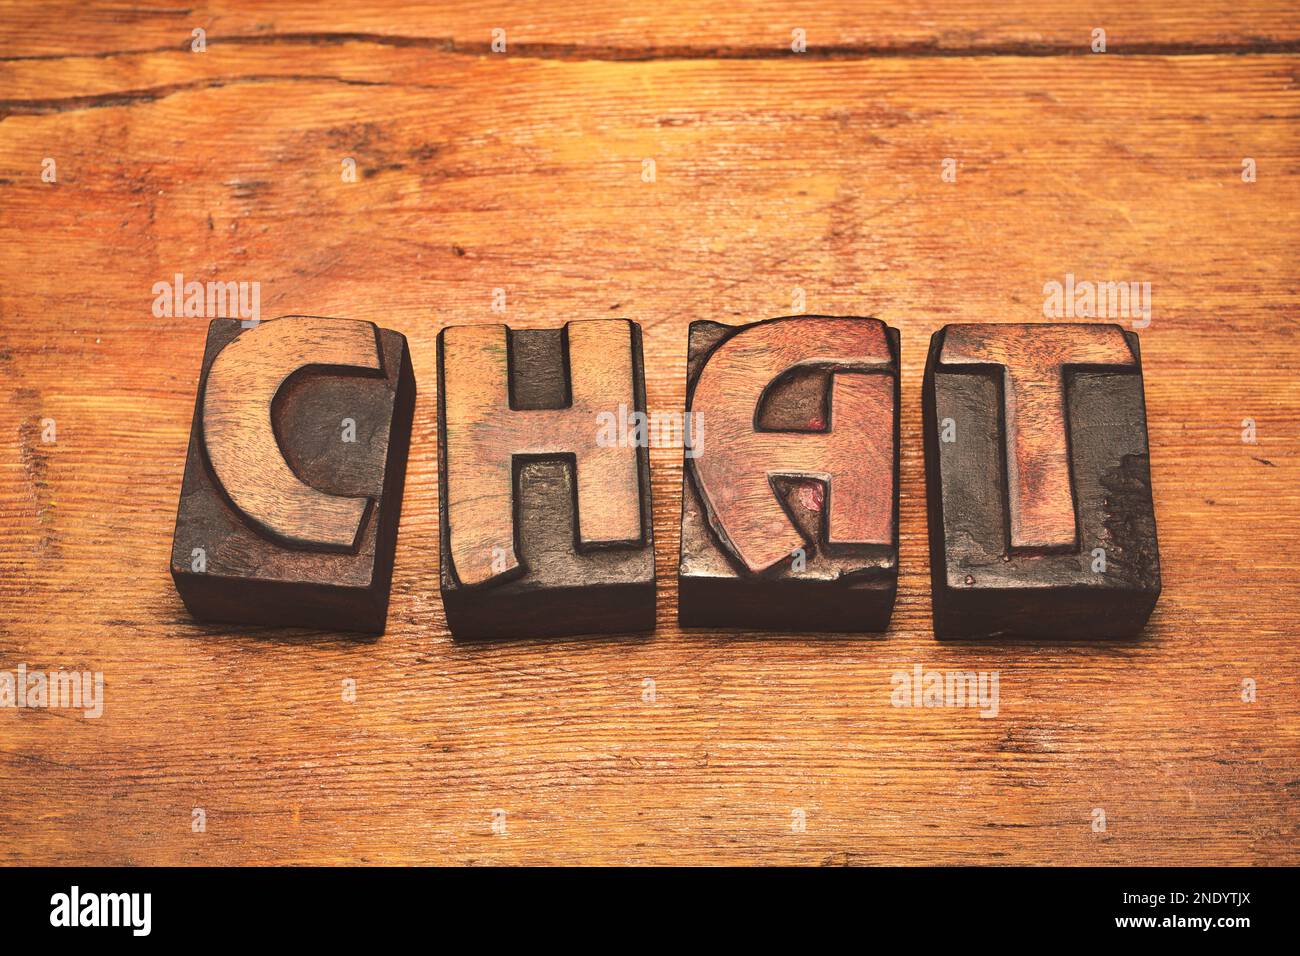 chat de mots fait de blocs de typographie vintage éparpillés sur une surface en bois Banque D'Images